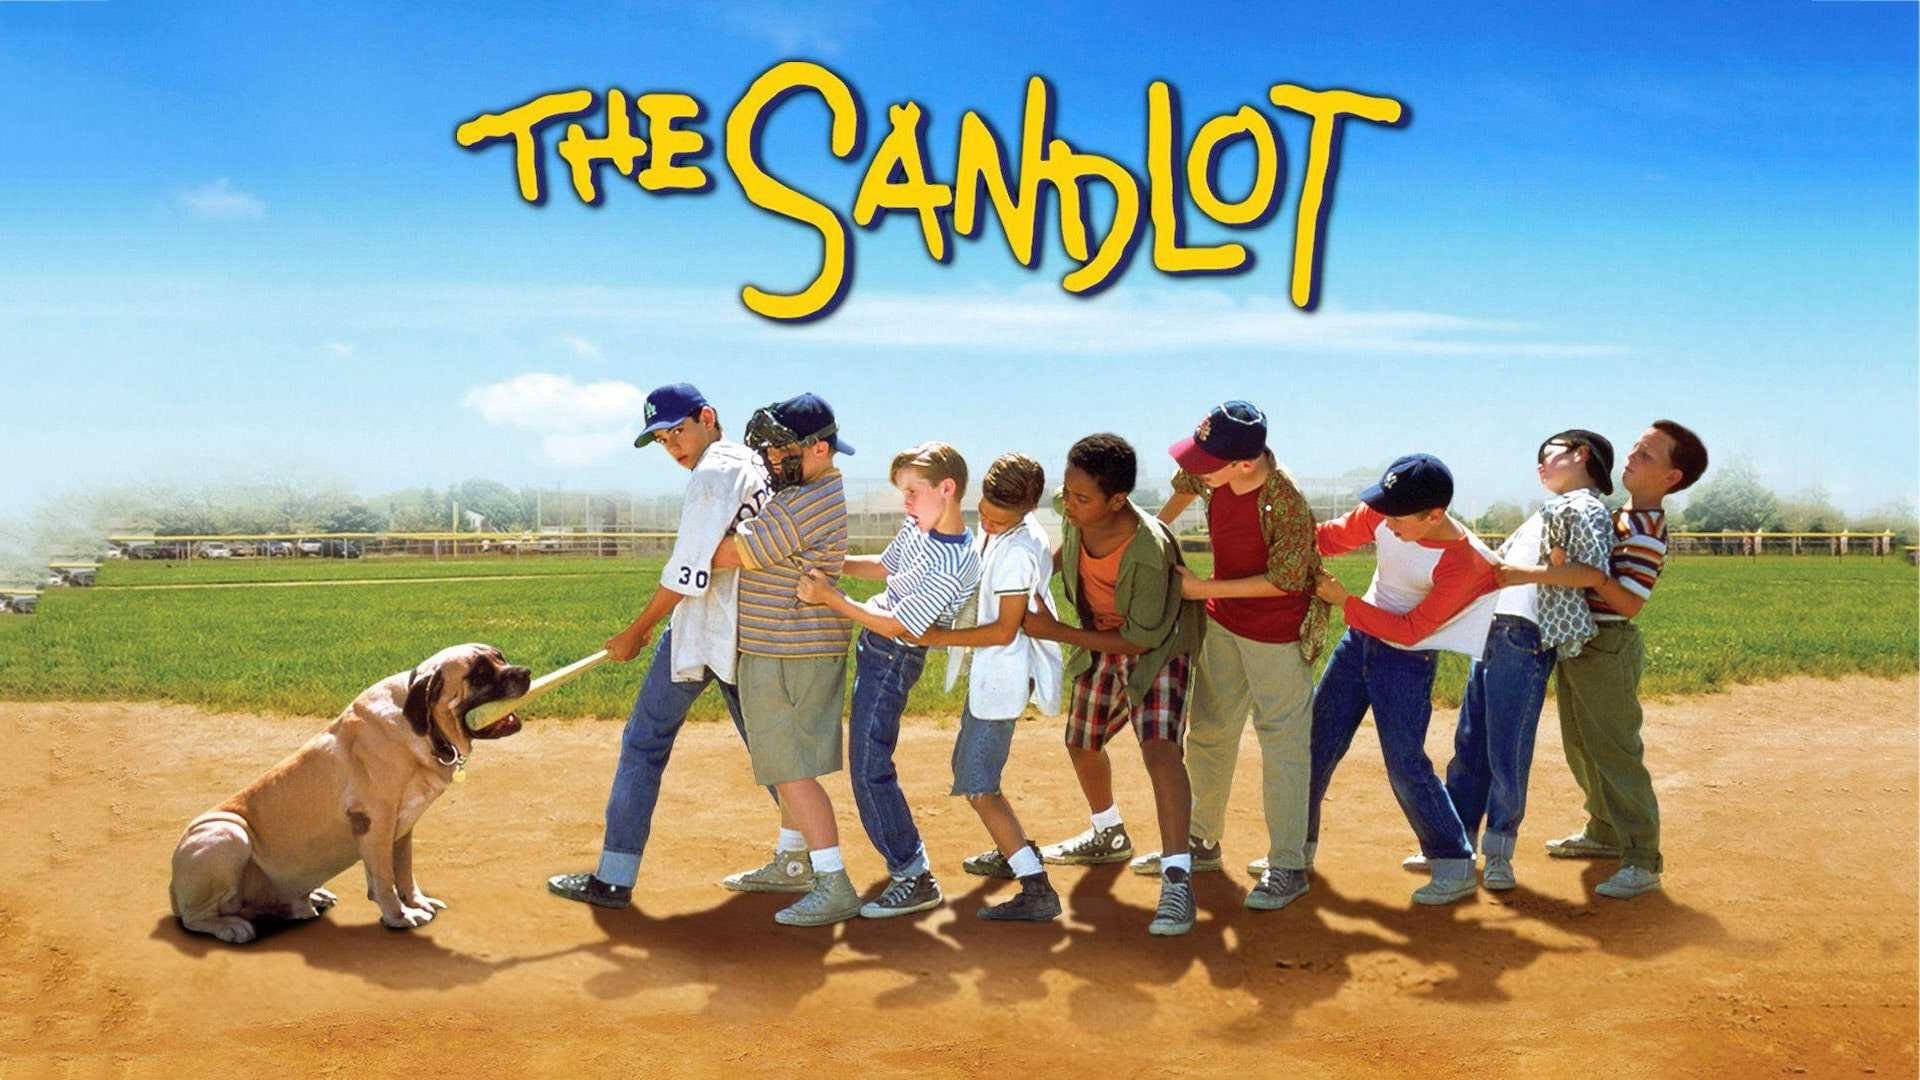 The Sandlot Movie Poster Wallpaper